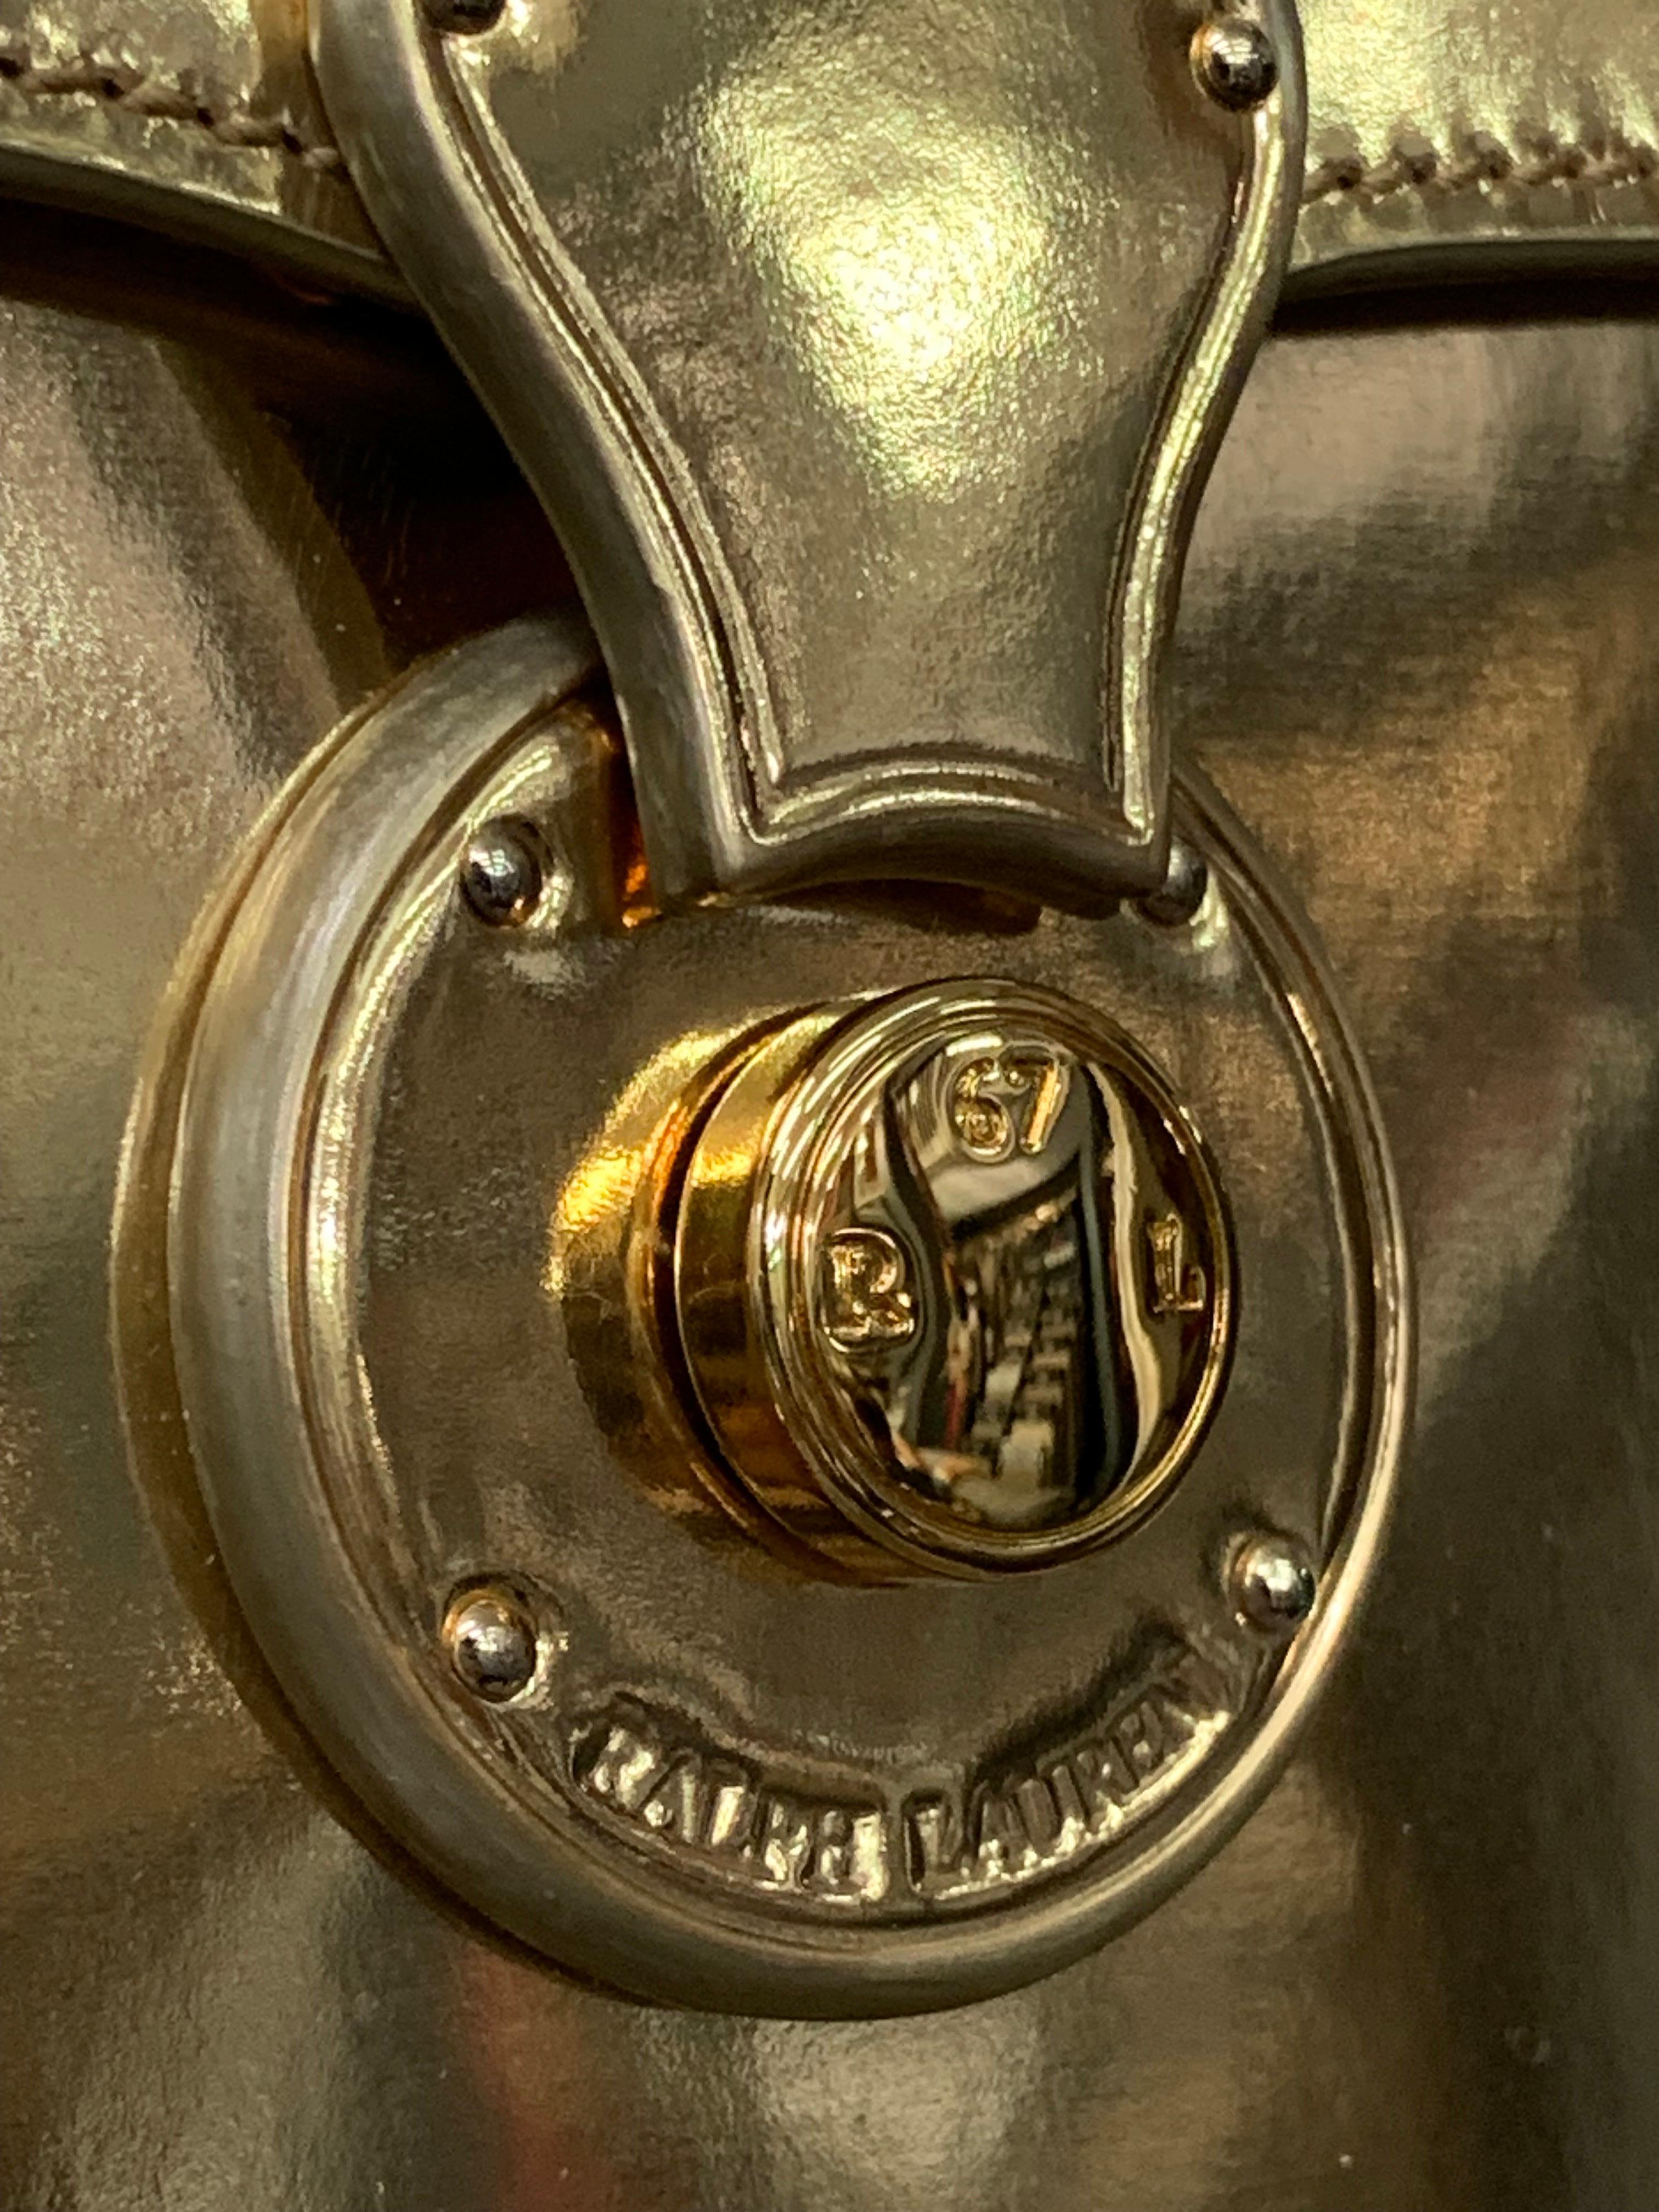 Ralph Lauren Gold Metallic Leather Mini Box Bag w Top Handle Shoulder Strap :  Fermoir lourd monogrammé. Neuf, jamais utilisé. Prix d'origine 2500 $. Intérieur en daim beige avec bandoulière amovible en cuir doré. De petite taille, il peut contenir